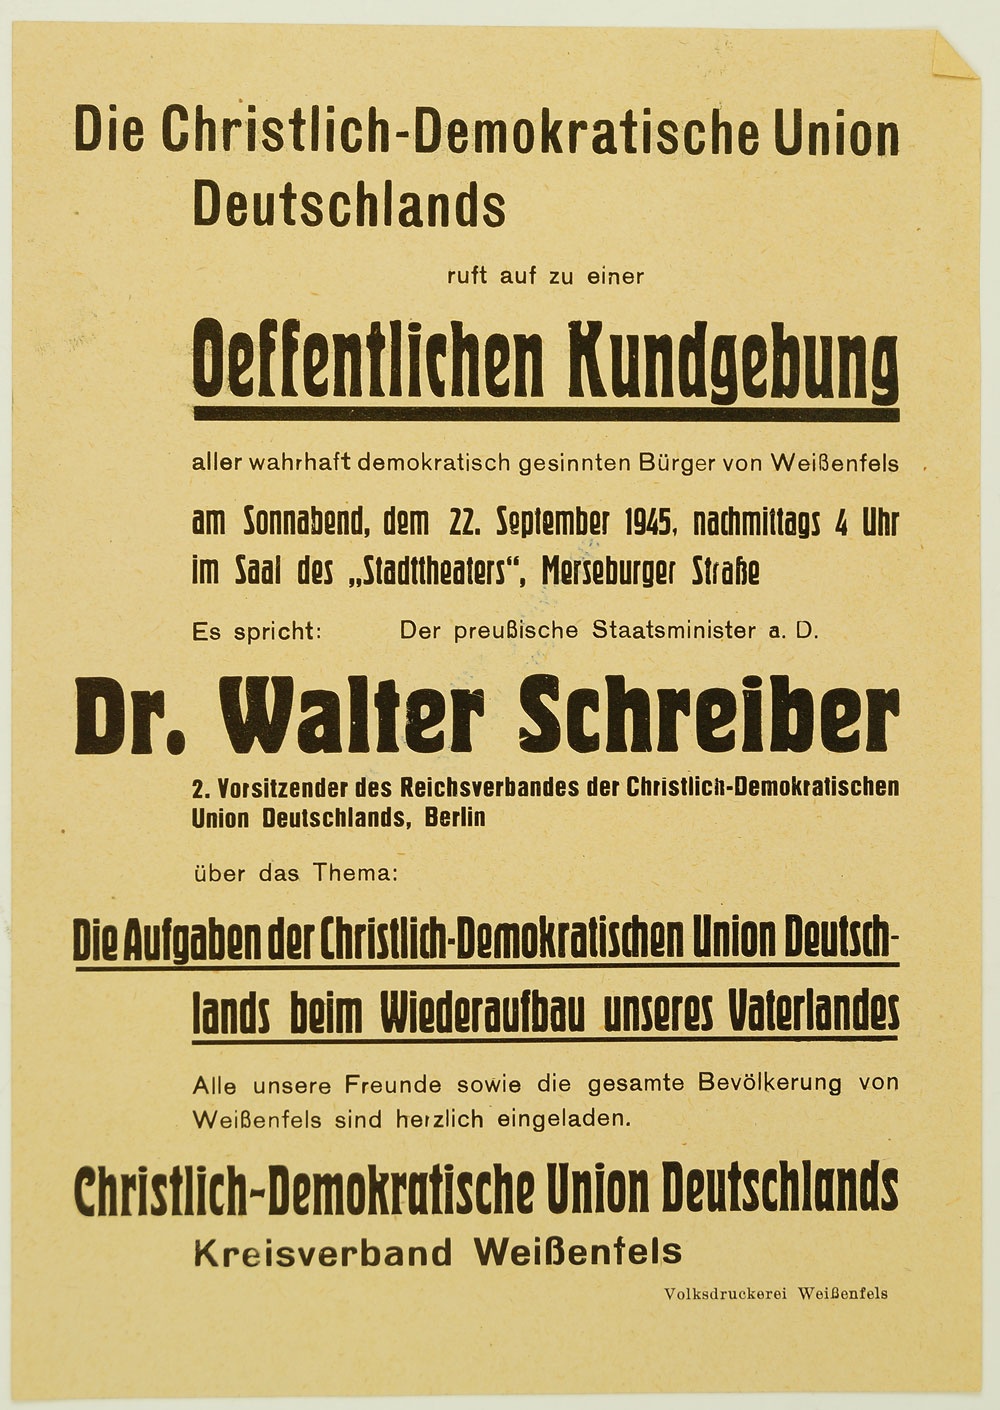 Handzettel für eine Öffentliche Kndgebung der CDU, 1945 (Museum Weißenfels - Schloss Neu-Augustusburg CC BY-NC-SA)